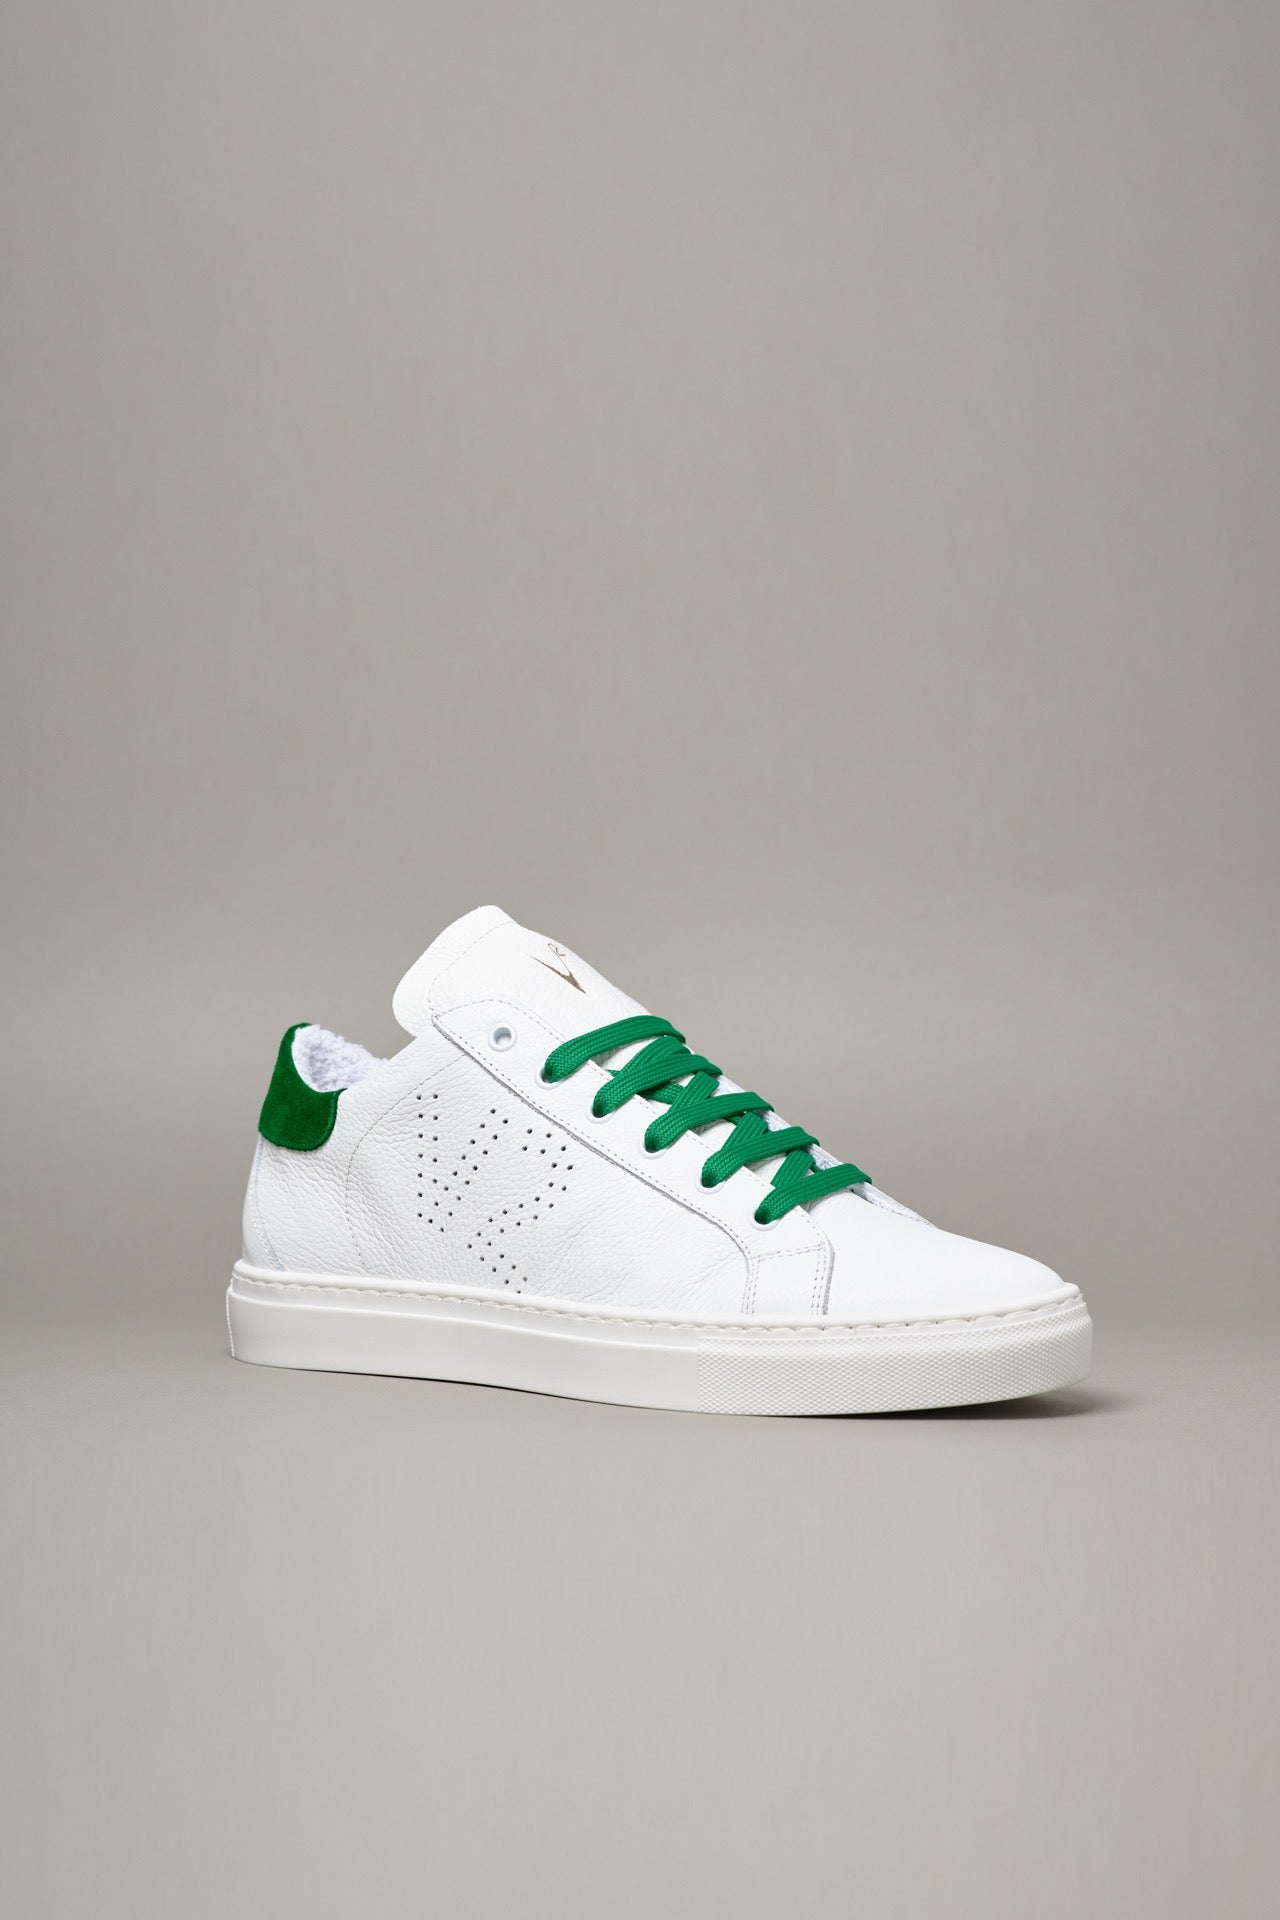 TENNIS - Sneakers a suola bassa Bianca con retro e lacci Verde